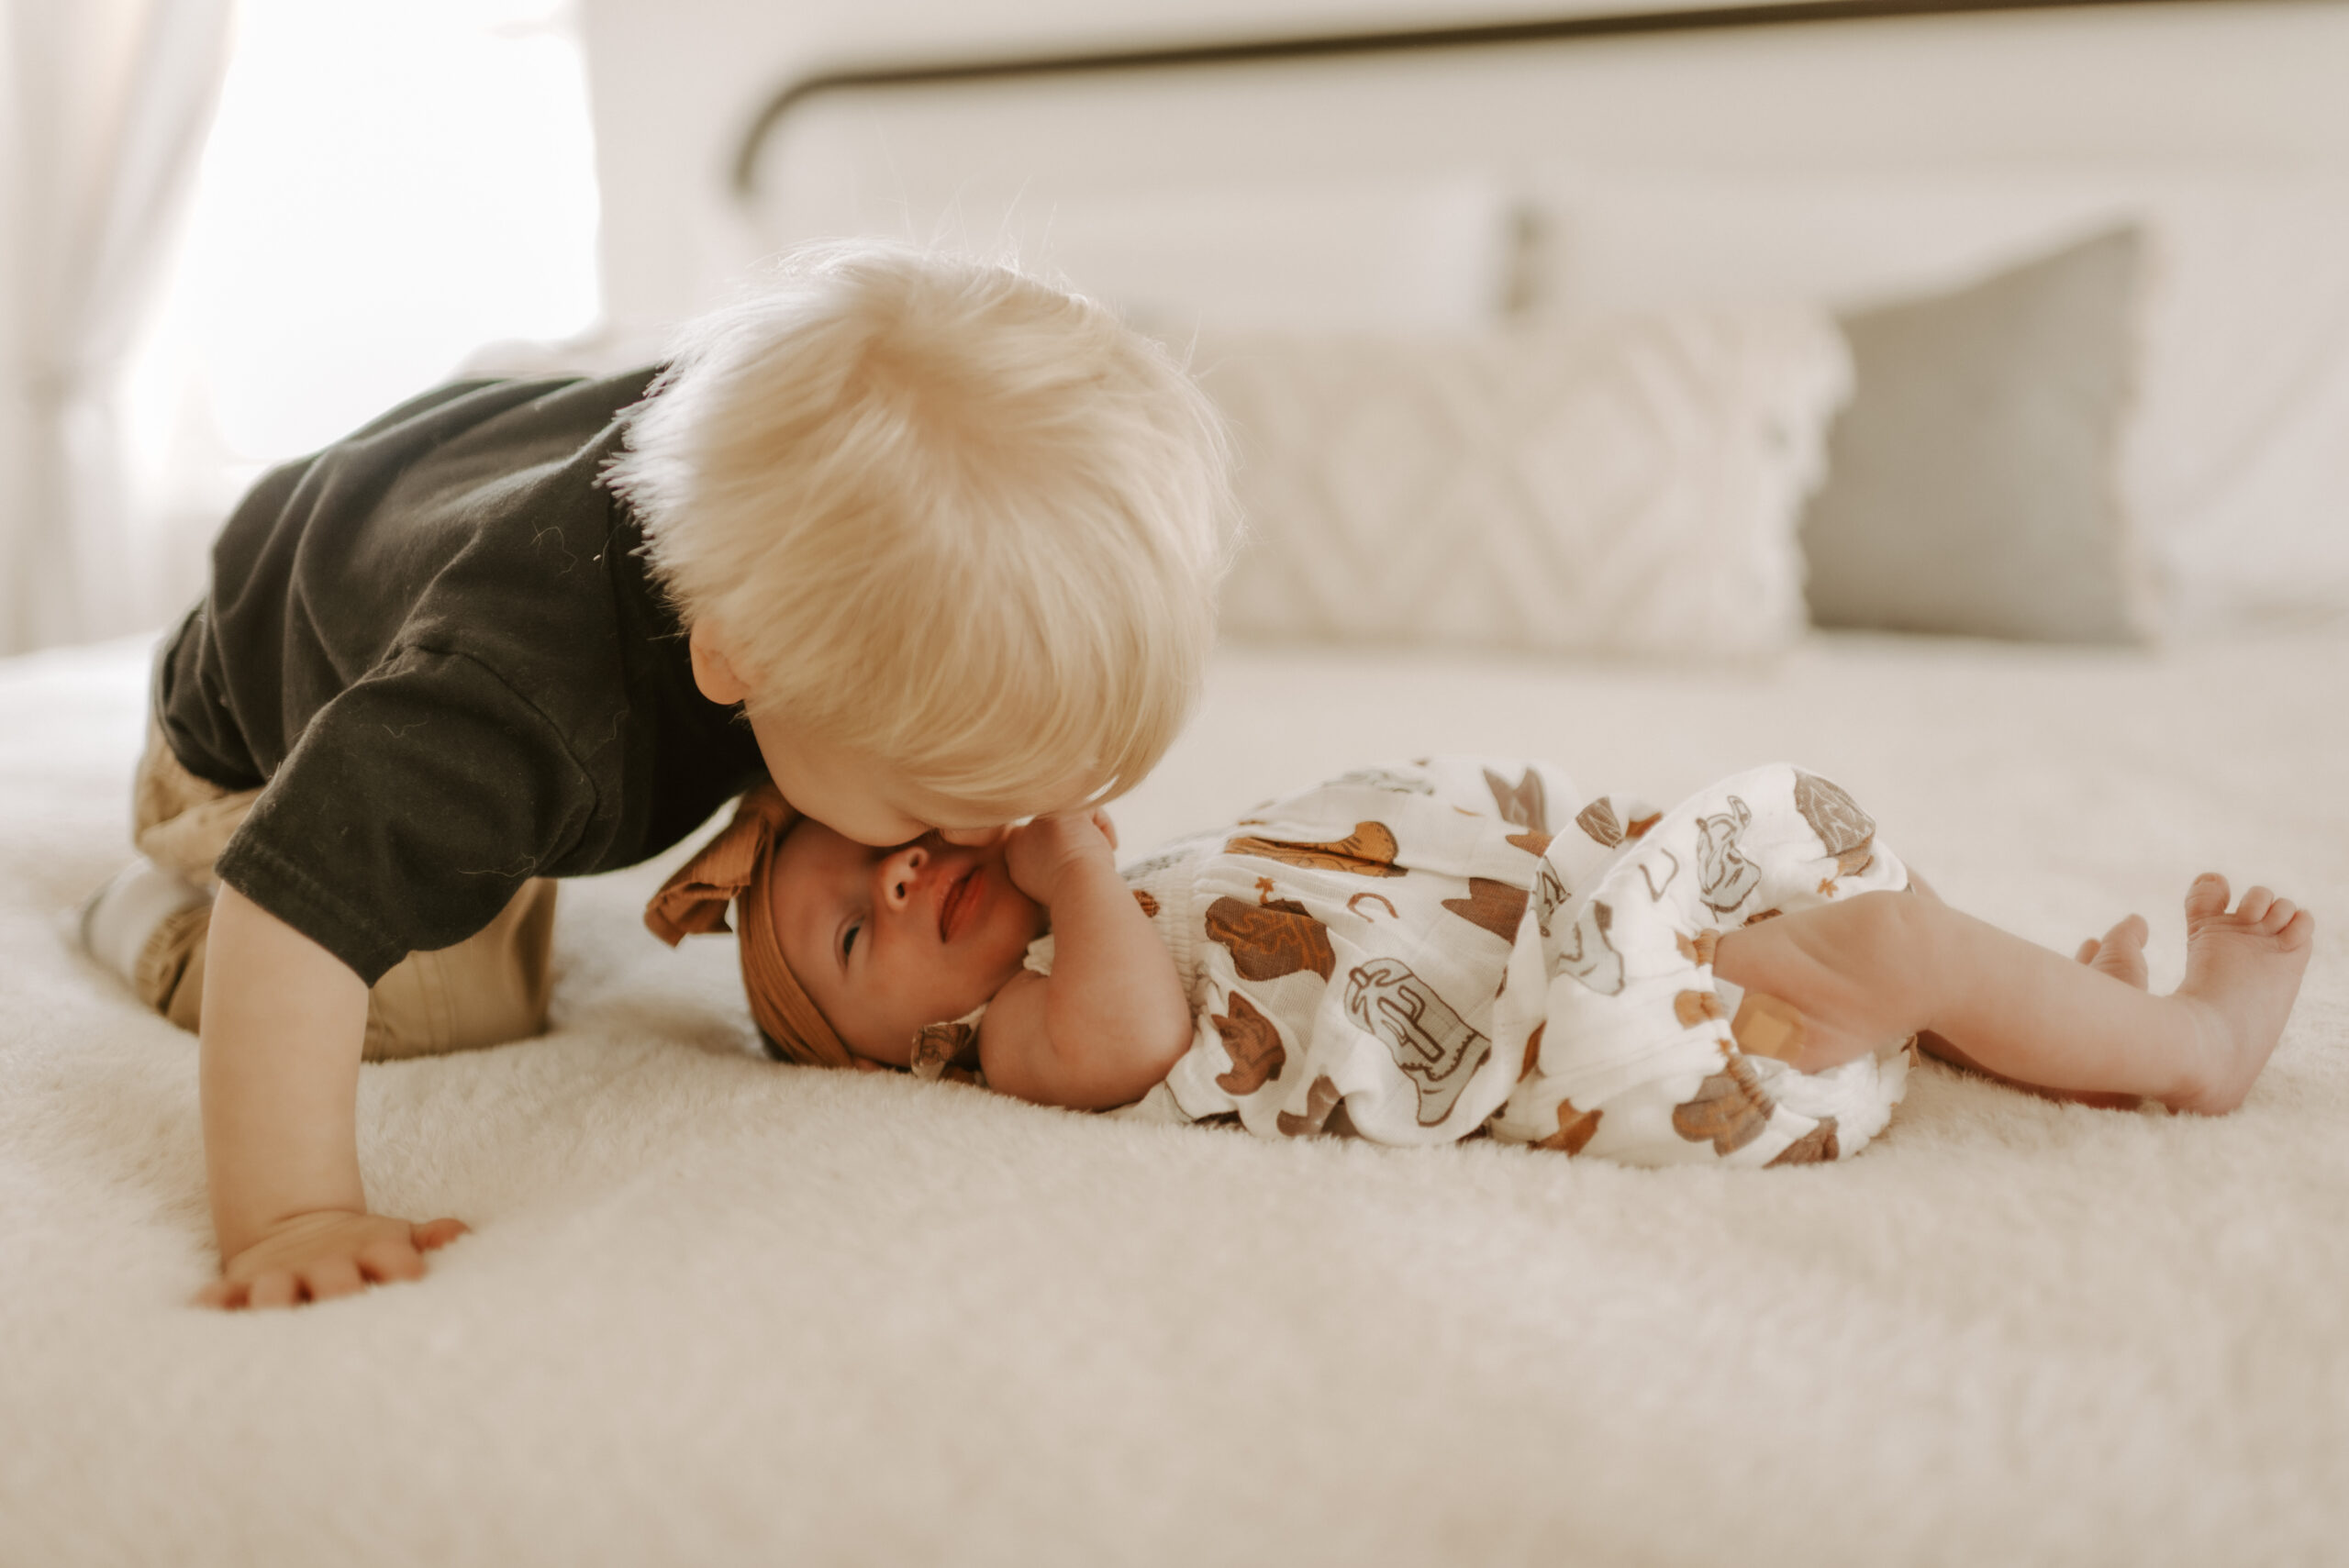 Sibling, indoor newborn photos